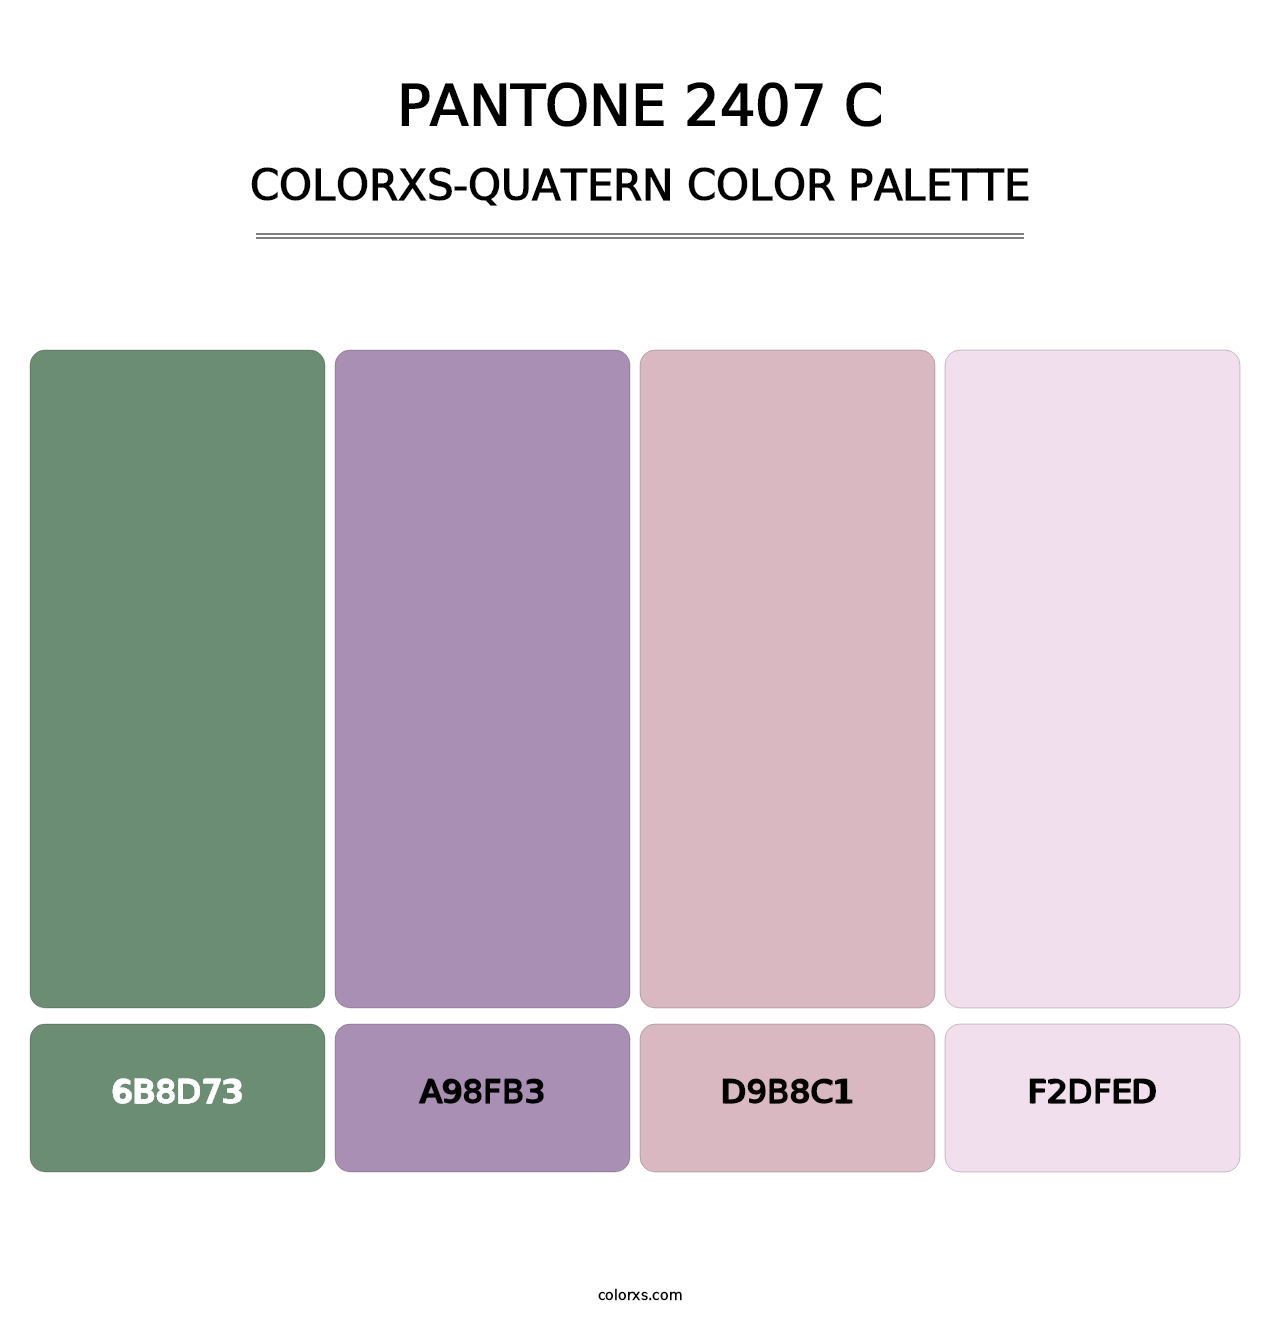 PANTONE 2407 C - Colorxs Quatern Palette